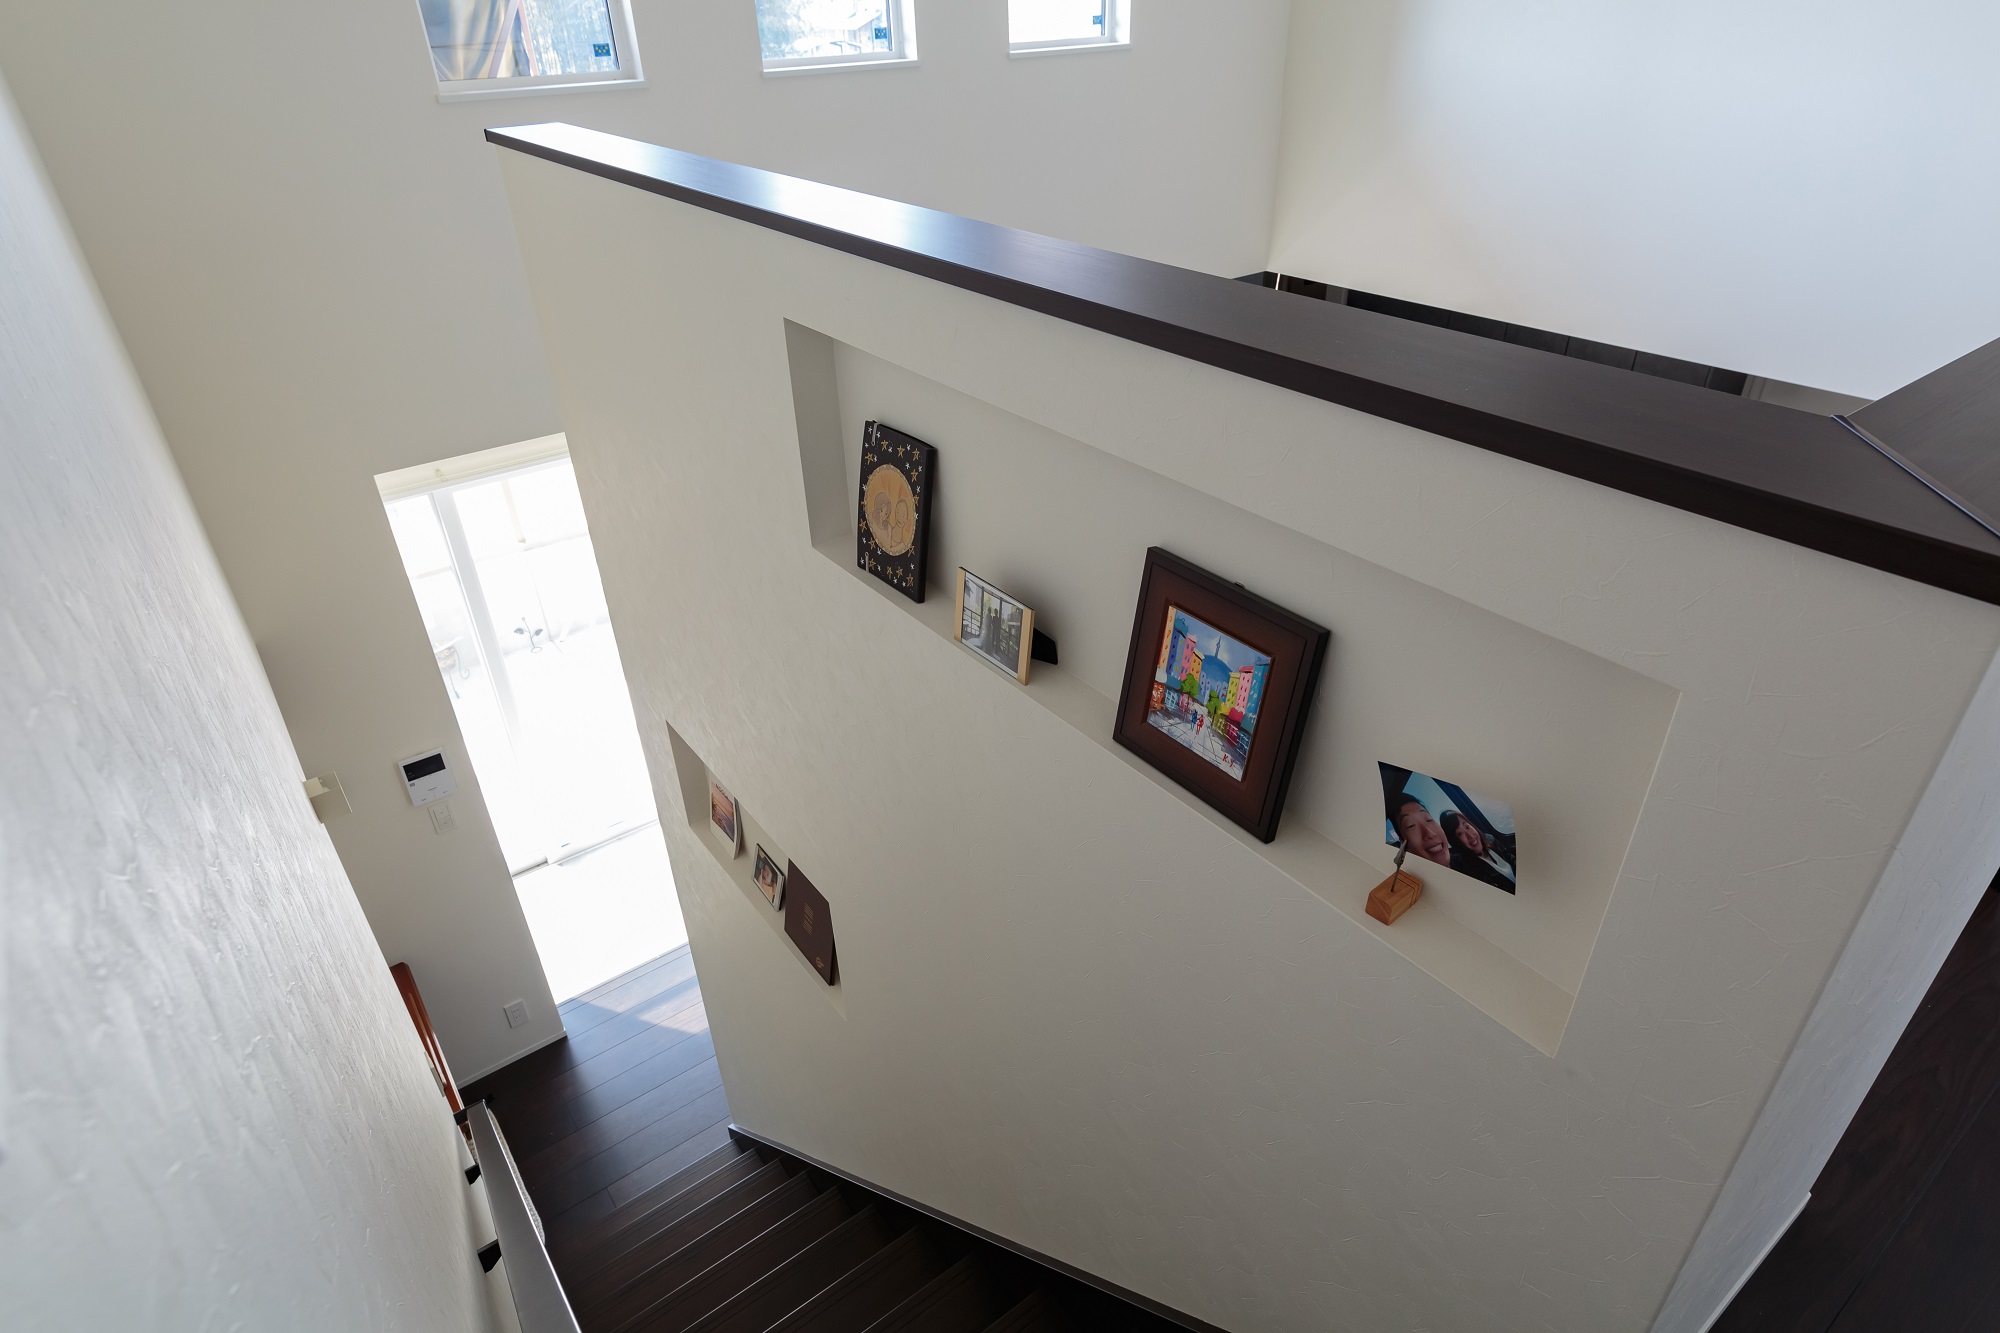 吹き抜けのリビング階段は、高さのある腰壁に大きなニッチをつくり、お洒落なギャラリースペースにアレンジ。写真や絵を立てかけて飾れるので壁を傷つけなくて済み、レイアウト変更も簡単に行えます。